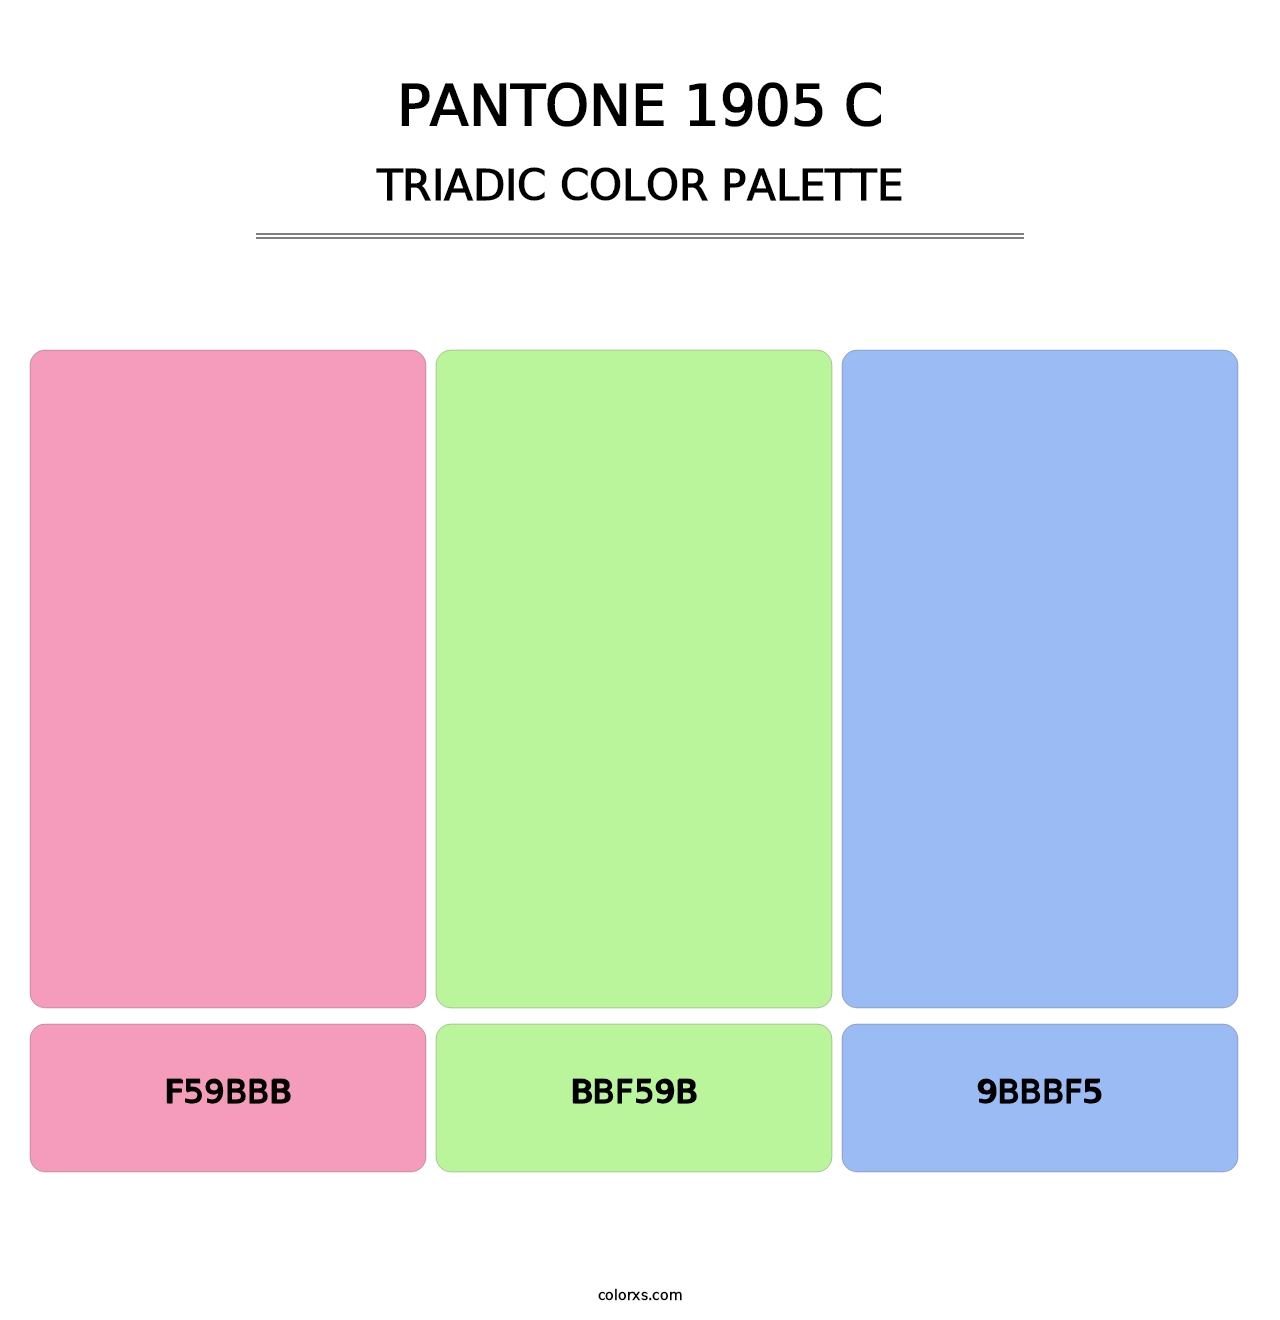 PANTONE 1905 C - Triadic Color Palette